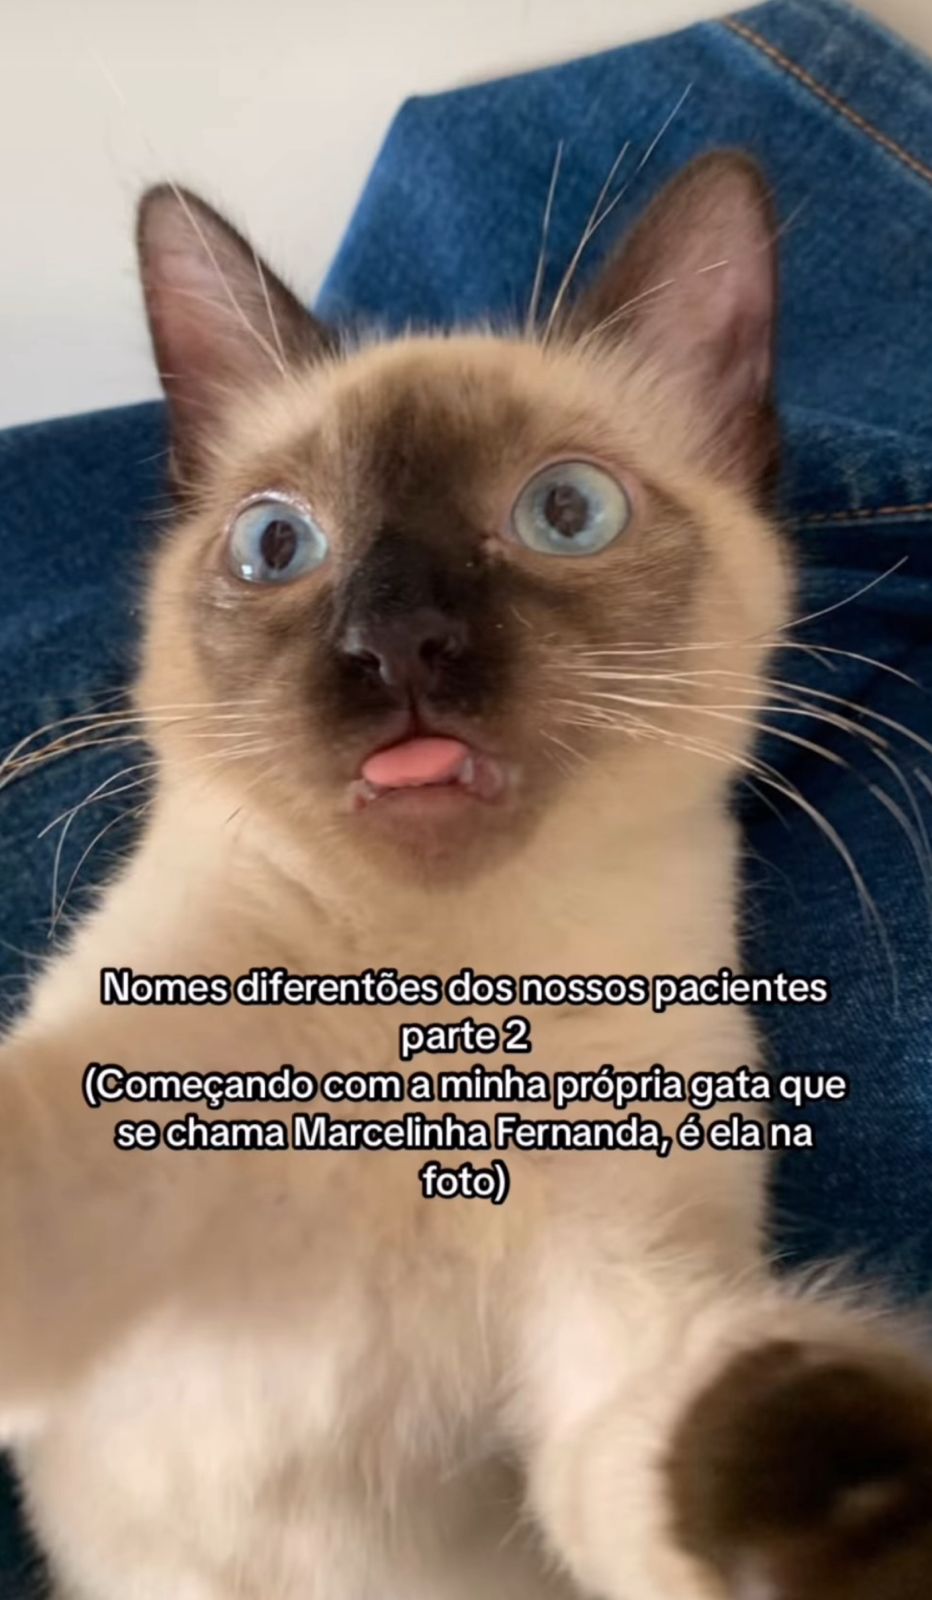 nomes engraçados para gatos: gata marcelinha fernanda dando língua